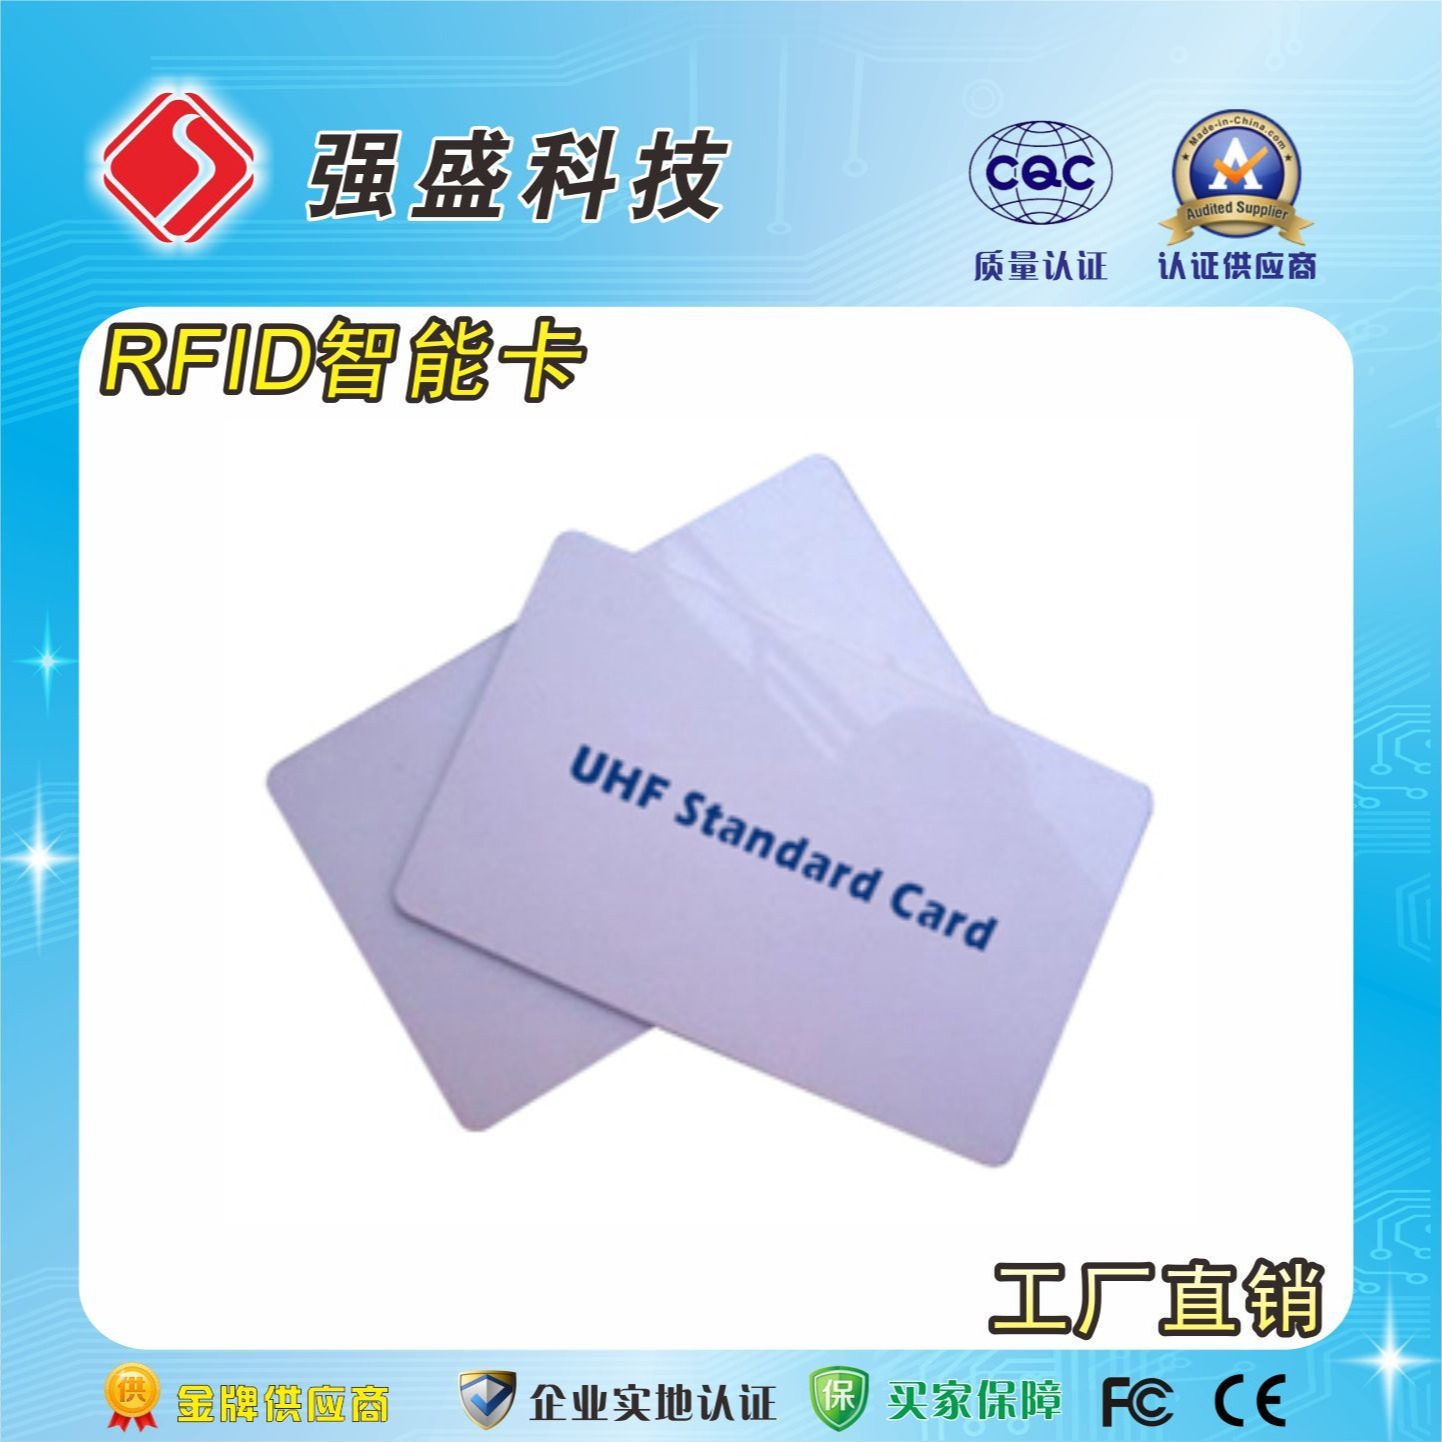 定制UHF智能卡 超高频标准卡 ISO18000-6C远距离卡